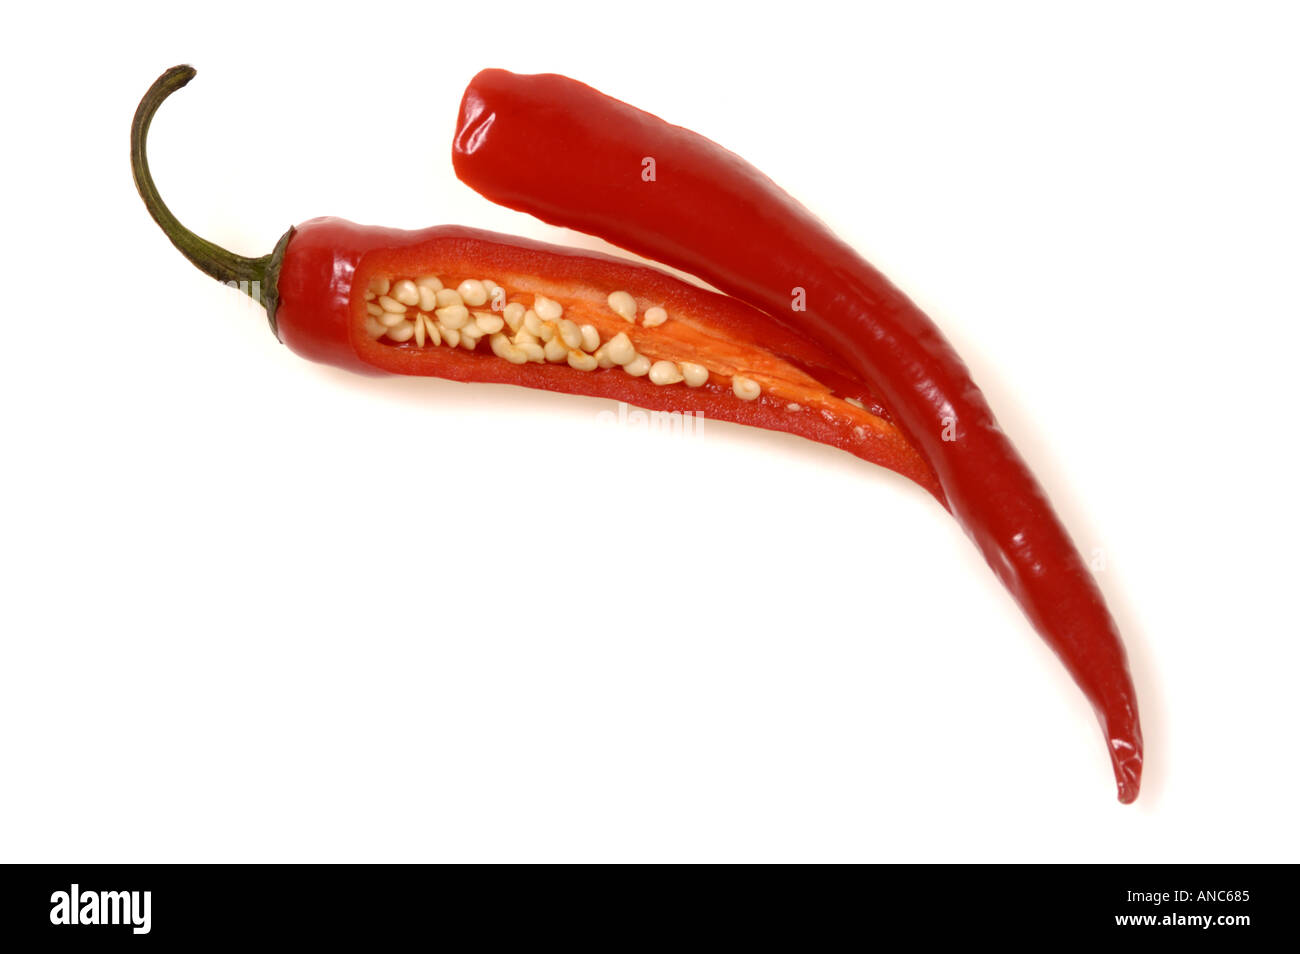 1 eine frische Paprika Chili kühl Chile Chili Essen einzelne Samen im Inneren Mais Schote abgeschnitten Stockfoto